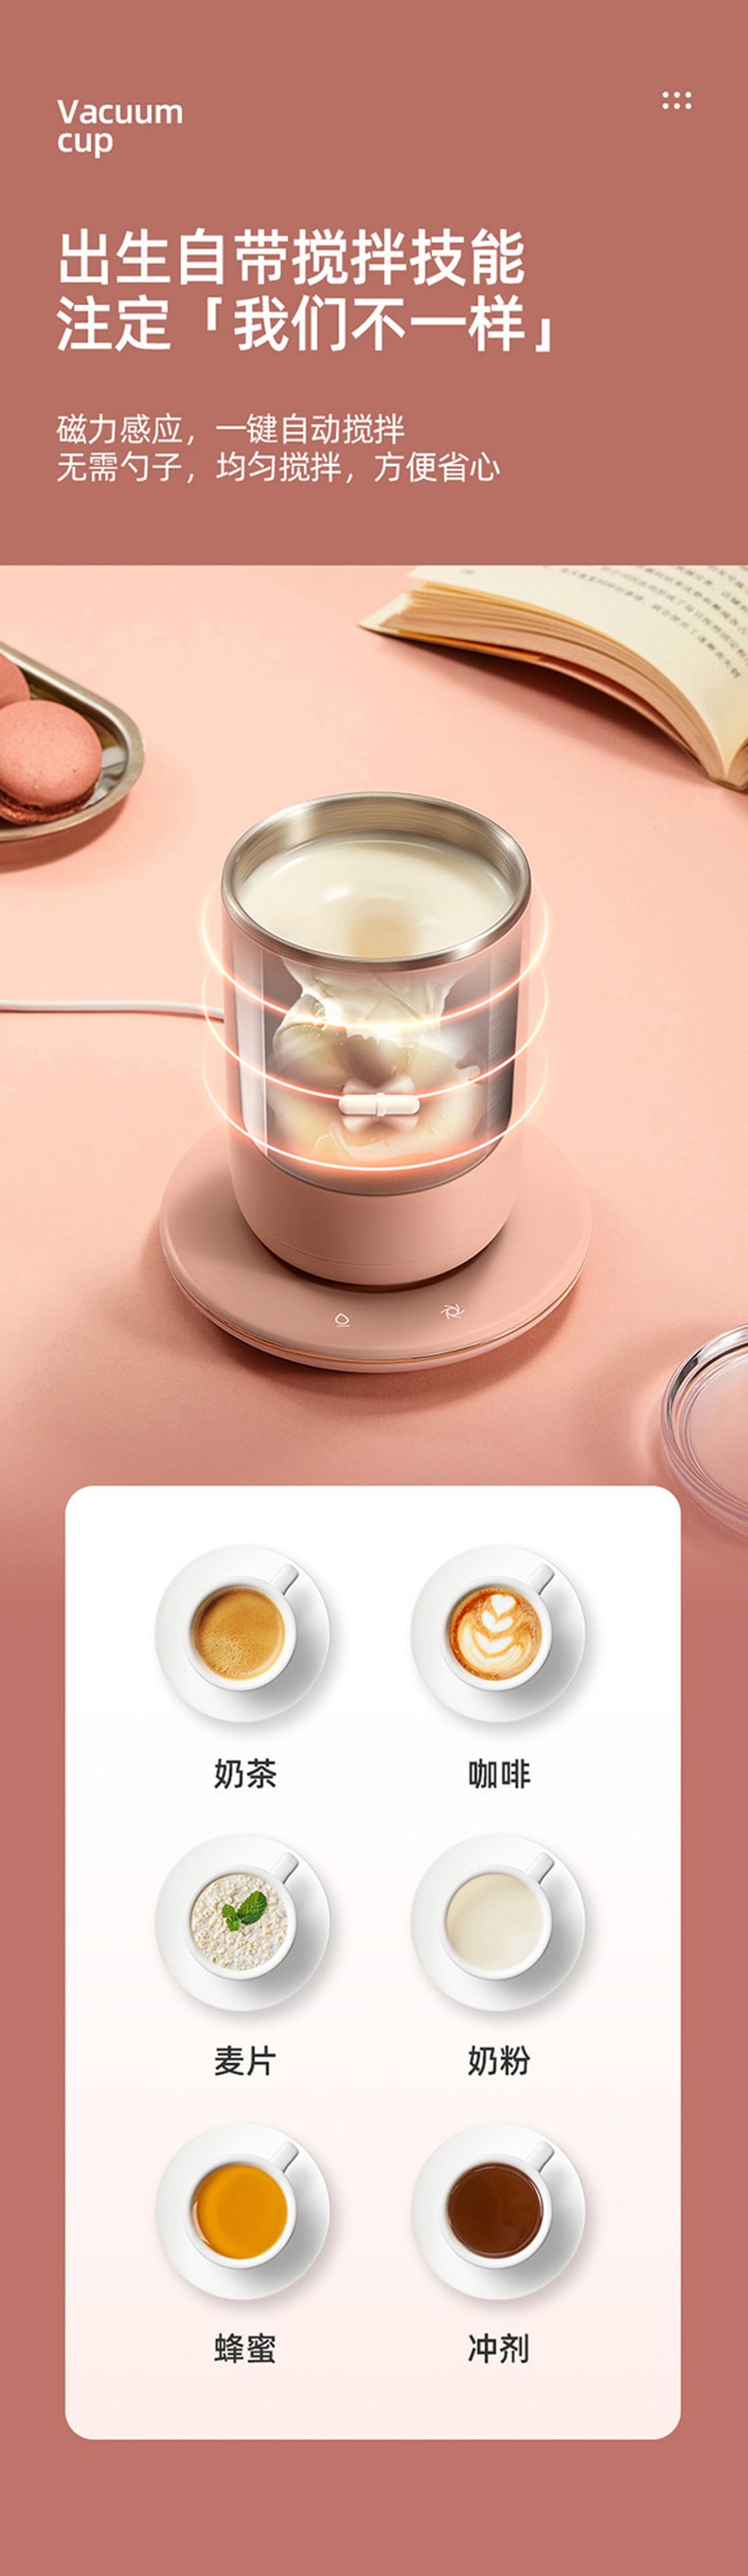 中国直邮 VIMI 自动搅拌杯300ml双层55度恒温电动搅拌咖啡杯不锈钢早餐保温杯 粉色